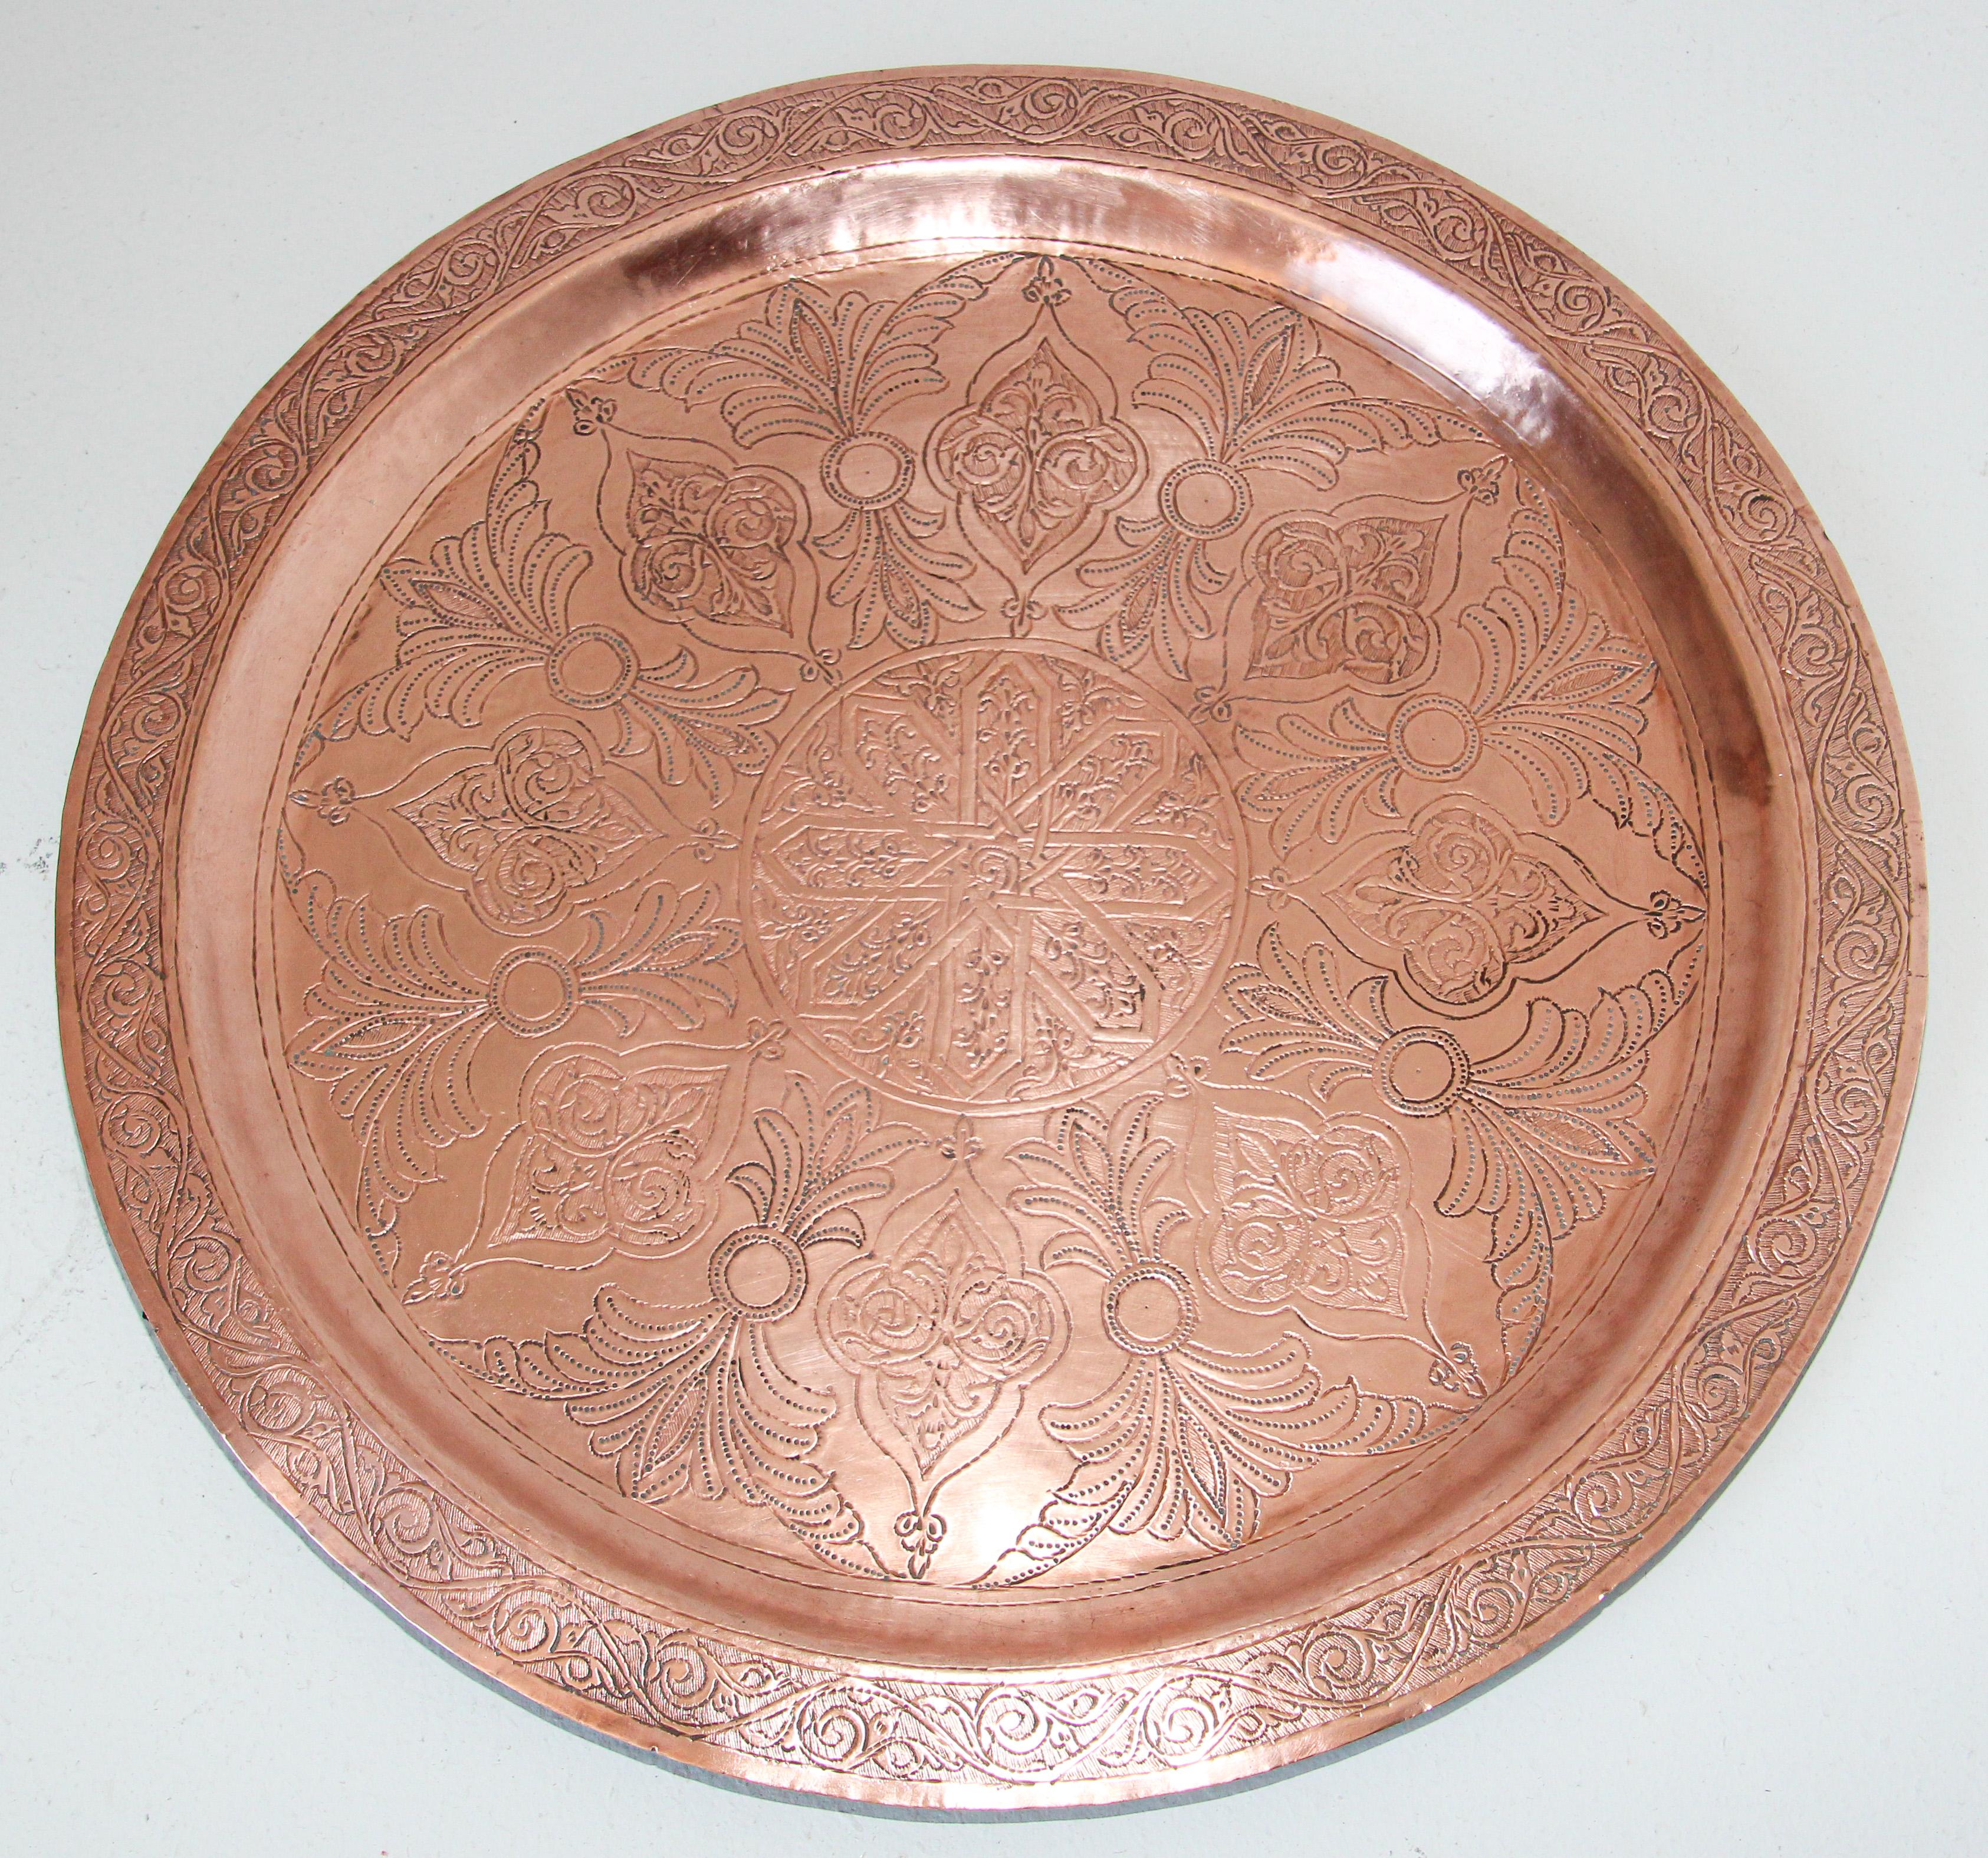 Plateau rond en cuivre antique de style mauresque marocain.
Le plateau circulaire en métal cuivré, fabriqué à la main, est décoré et martelé de motifs floraux et géométriques islamiques mauresques.
Plaque de cuivre en métal rouge lourd avec un